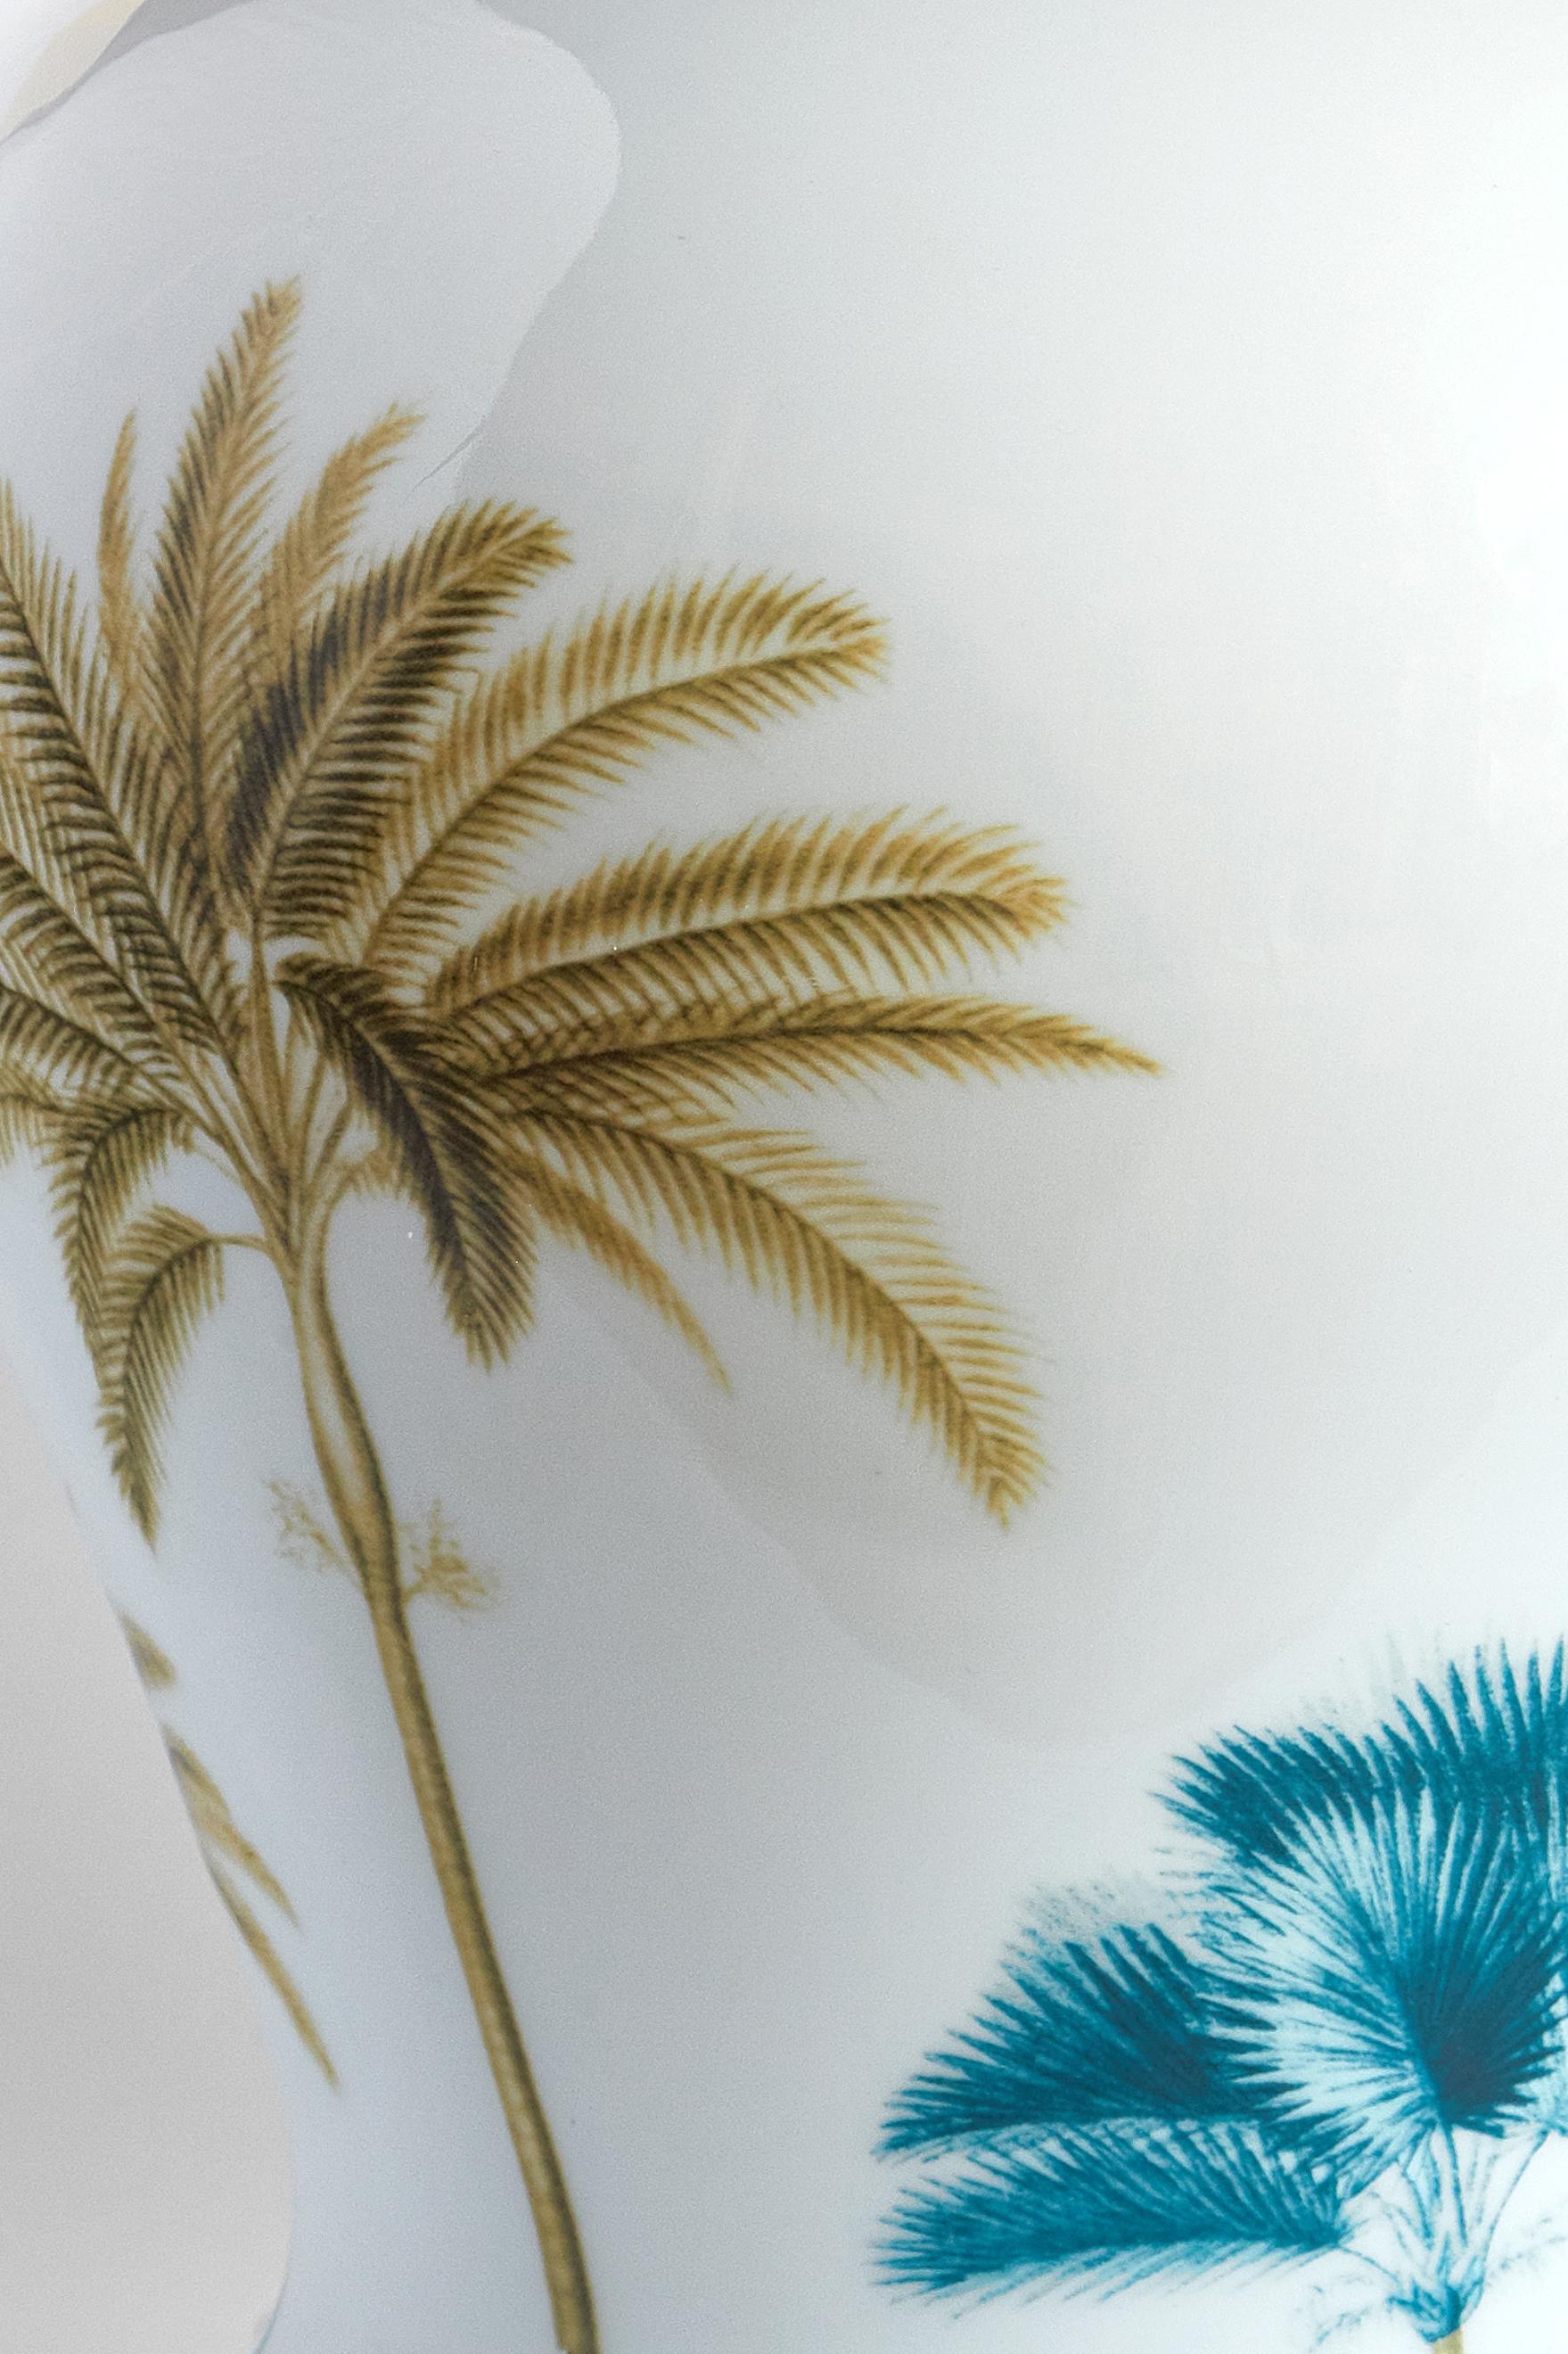 Das klassische Design dieser Porzellanvase wird durch Retro-Dekorationen mit zeitgenössischer Note wieder zum Leben erweckt. Teal- und ockerfarbene Palmen säumen den Rand der kostbaren Vase.